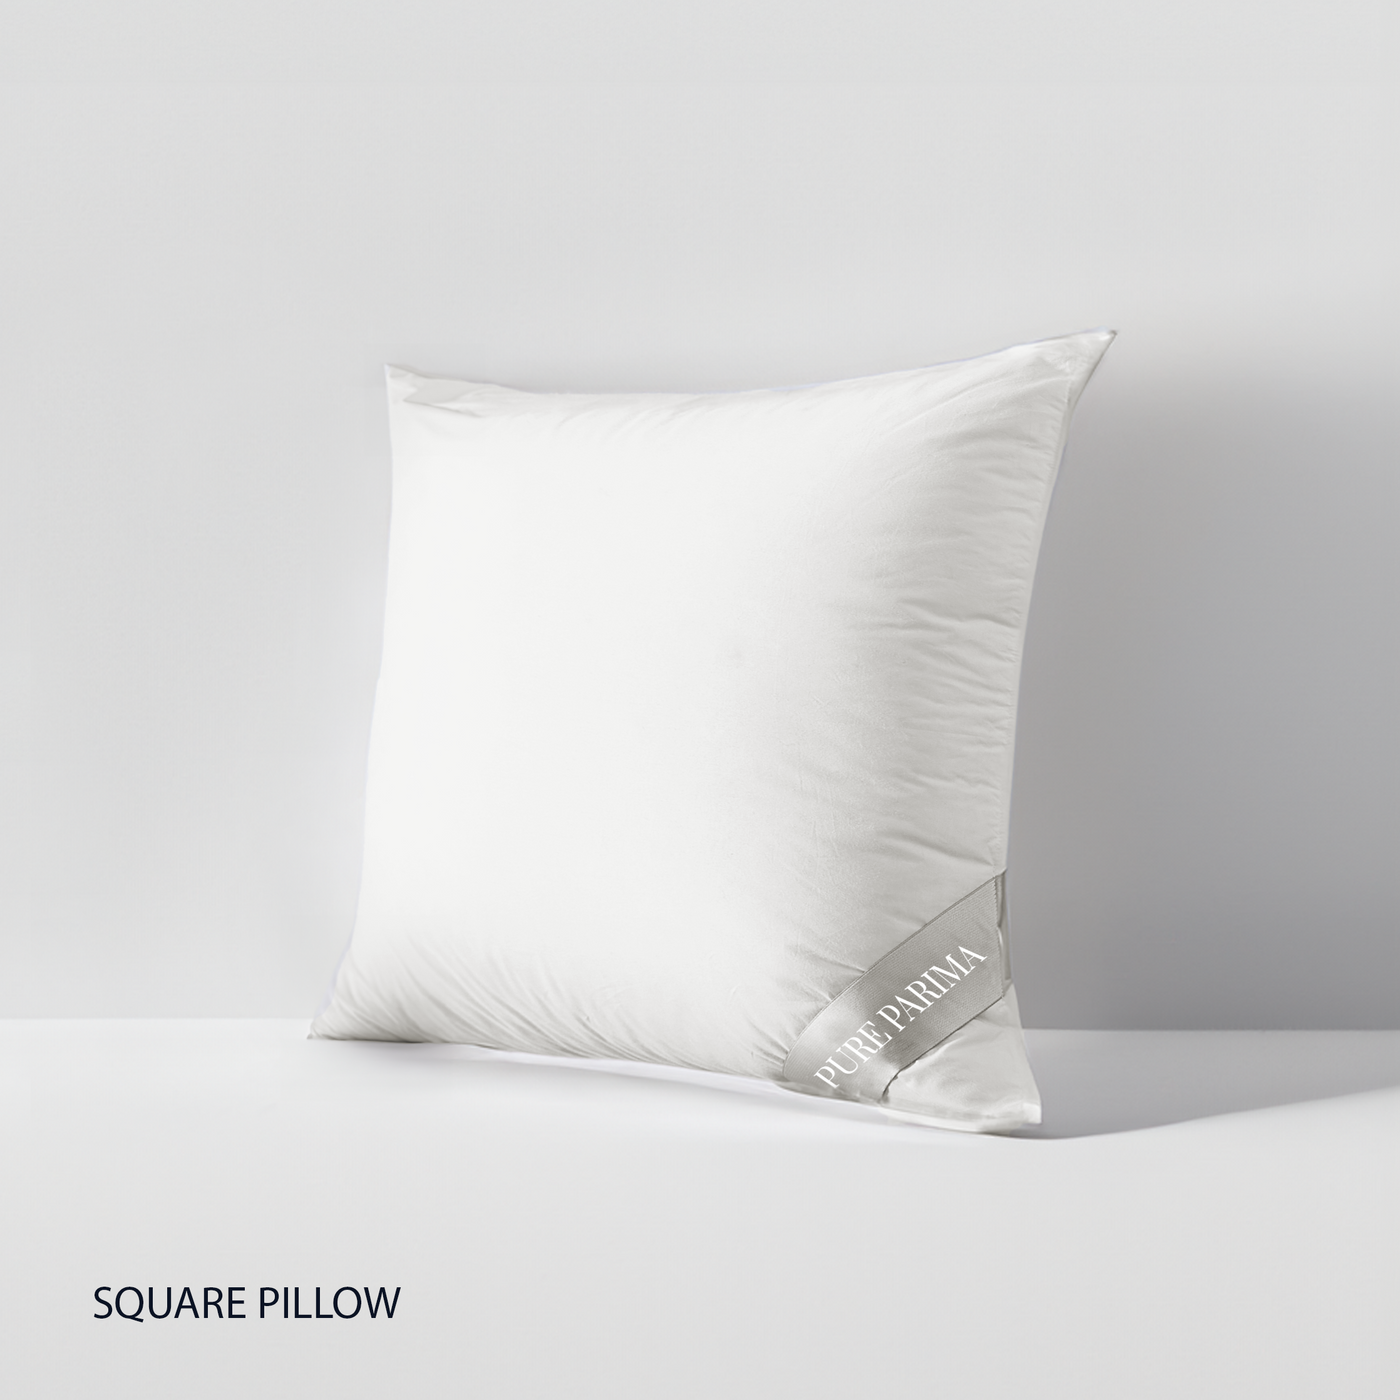 Euro Pillow Insert